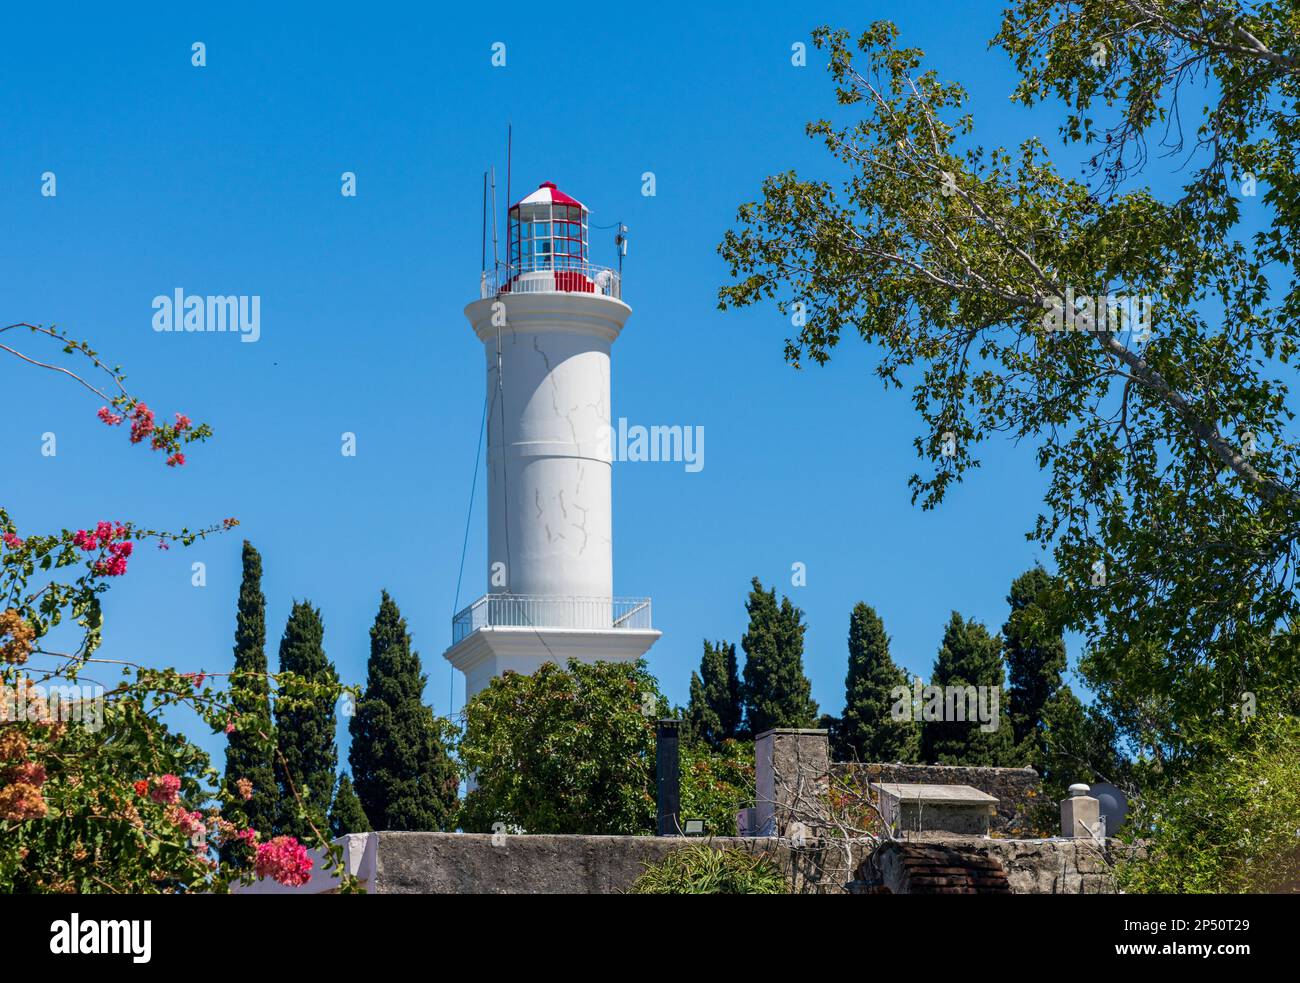 Le phare se dresse au-dessus des jardins de l'UNESCO Colonia del Sacramento Uruguay Banque D'Images